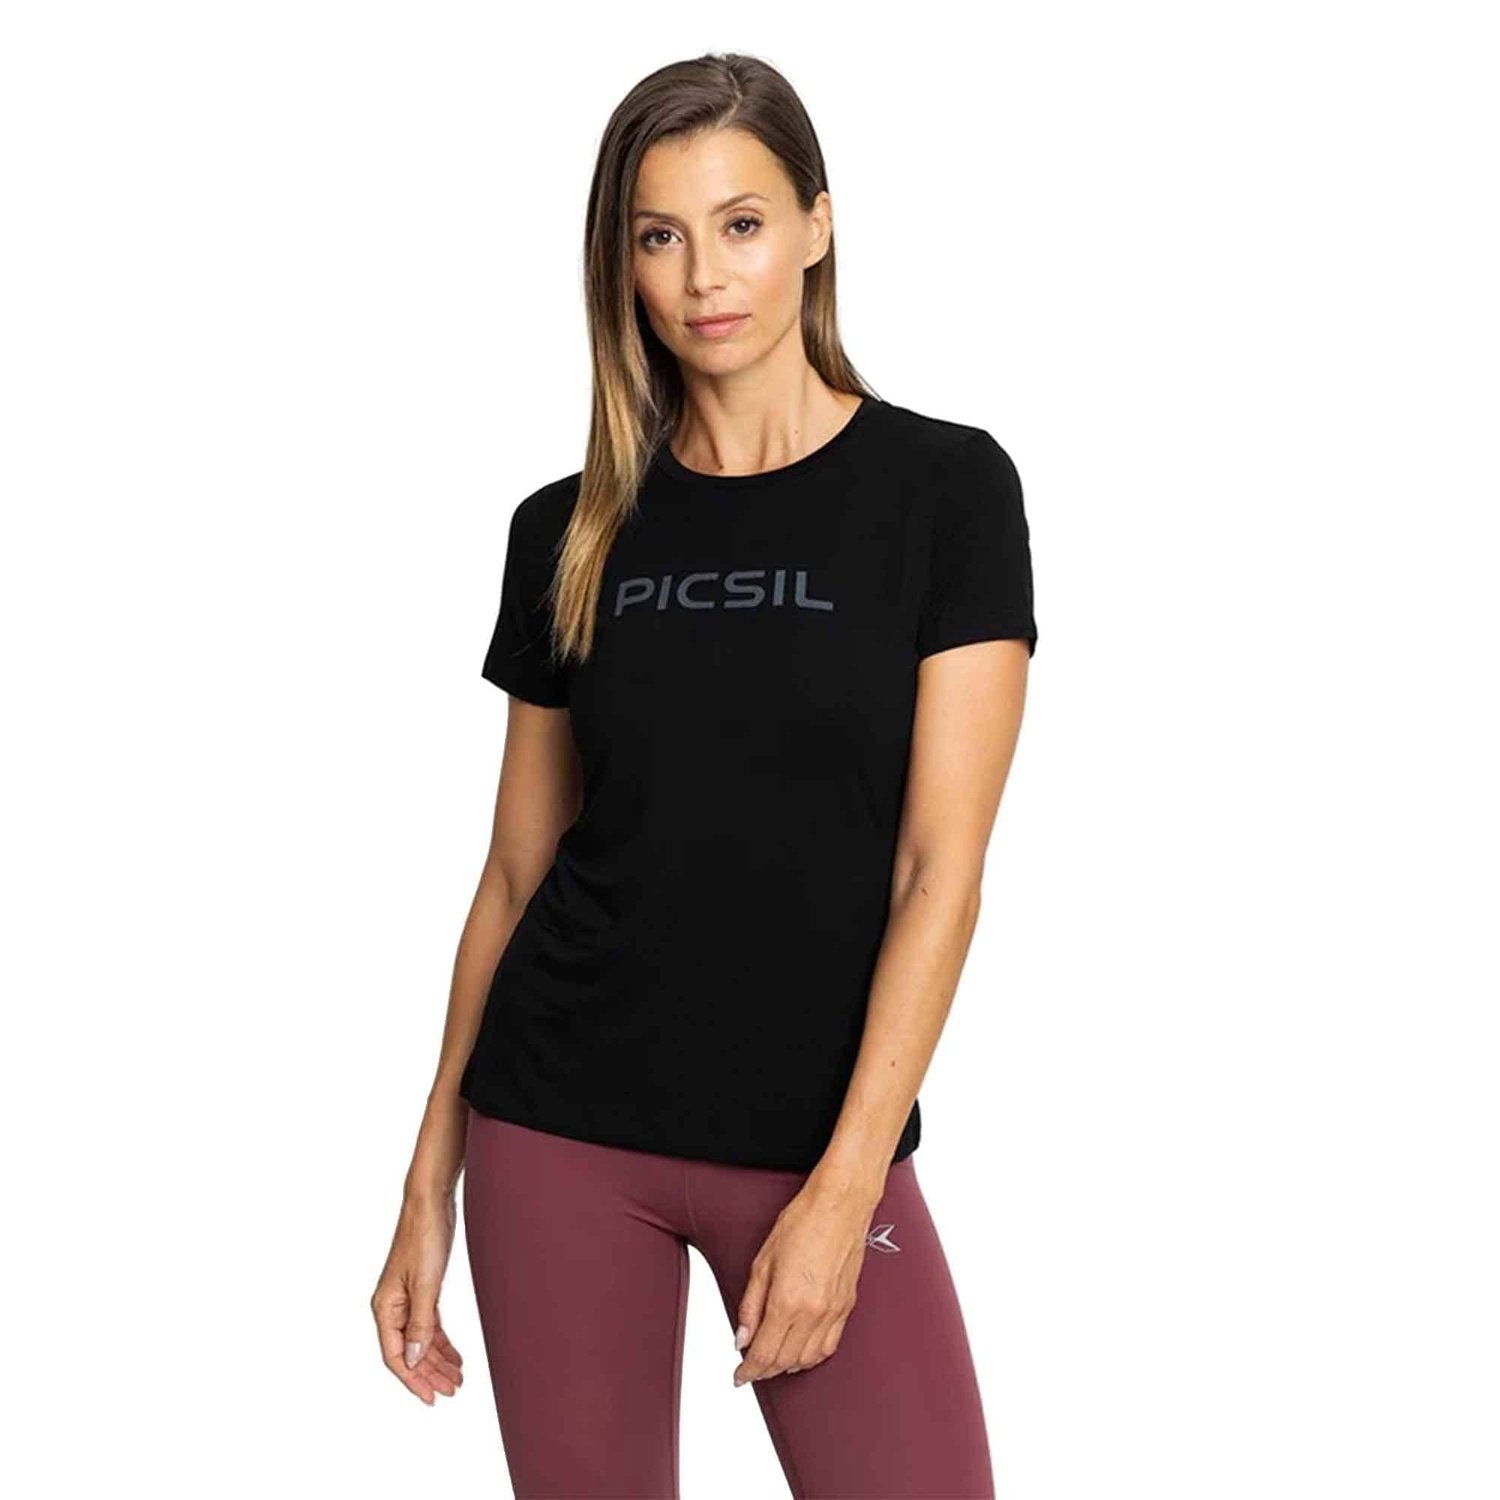 PicSil Damen Sport T-Shirt (Tee Core 0.2) kaufen bei HighPowered.ch